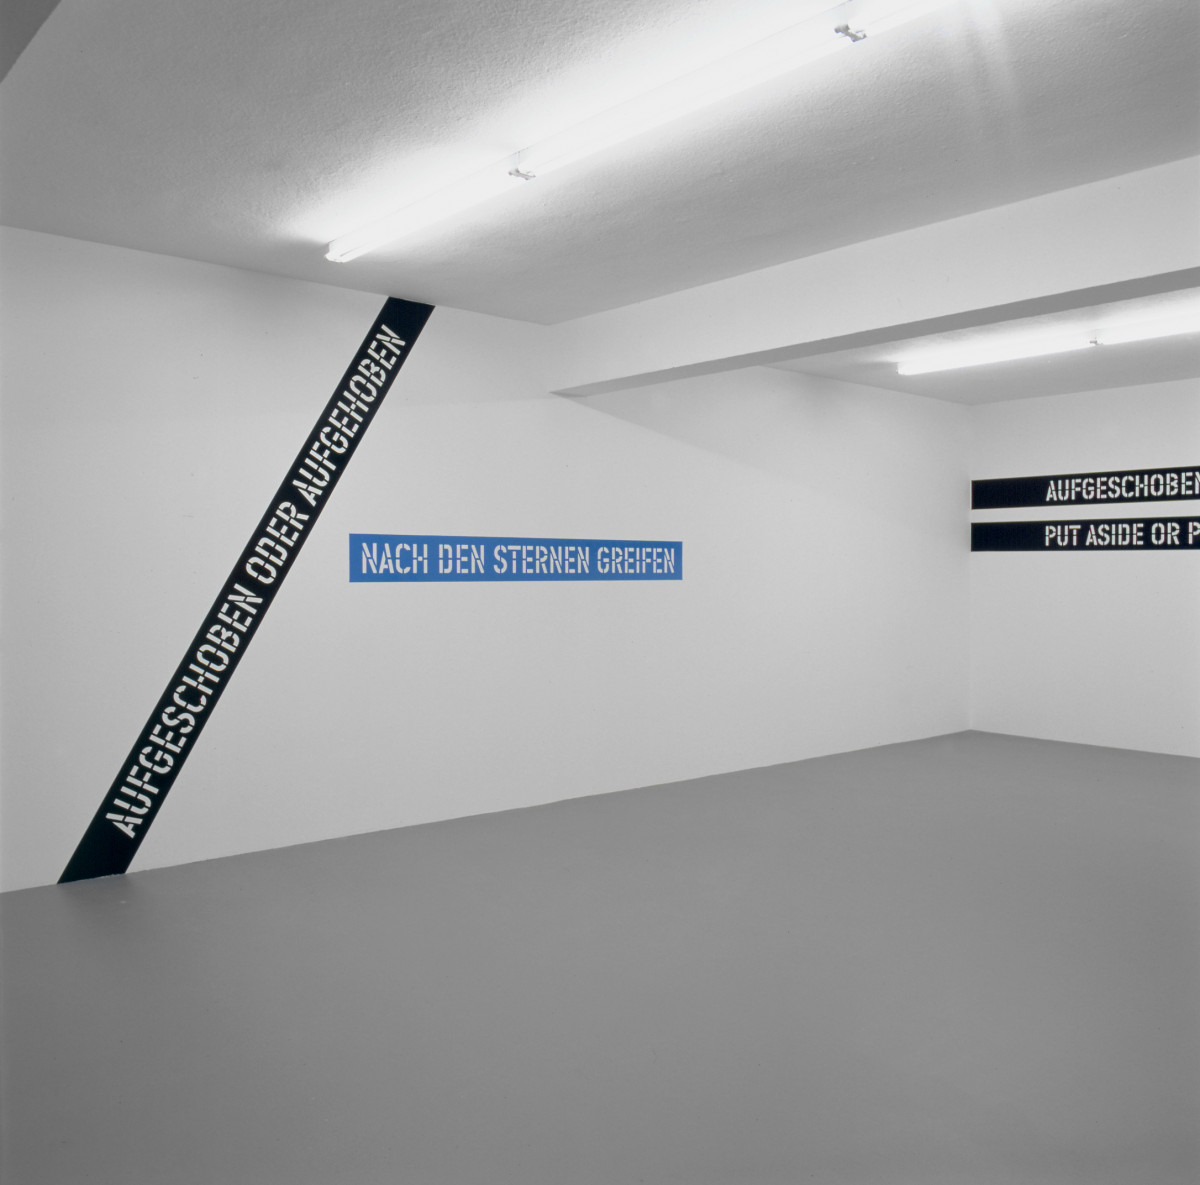 Lawrence Weiner, ‘AUFGESCHOBEN ODER AUFGEHOBEN NACH DEN STERNEN GREIFEN PUT ASIDE OR PUT AWAY REACHING FOR THE STARS’, Installation view, Buchmann Galerie, 2002